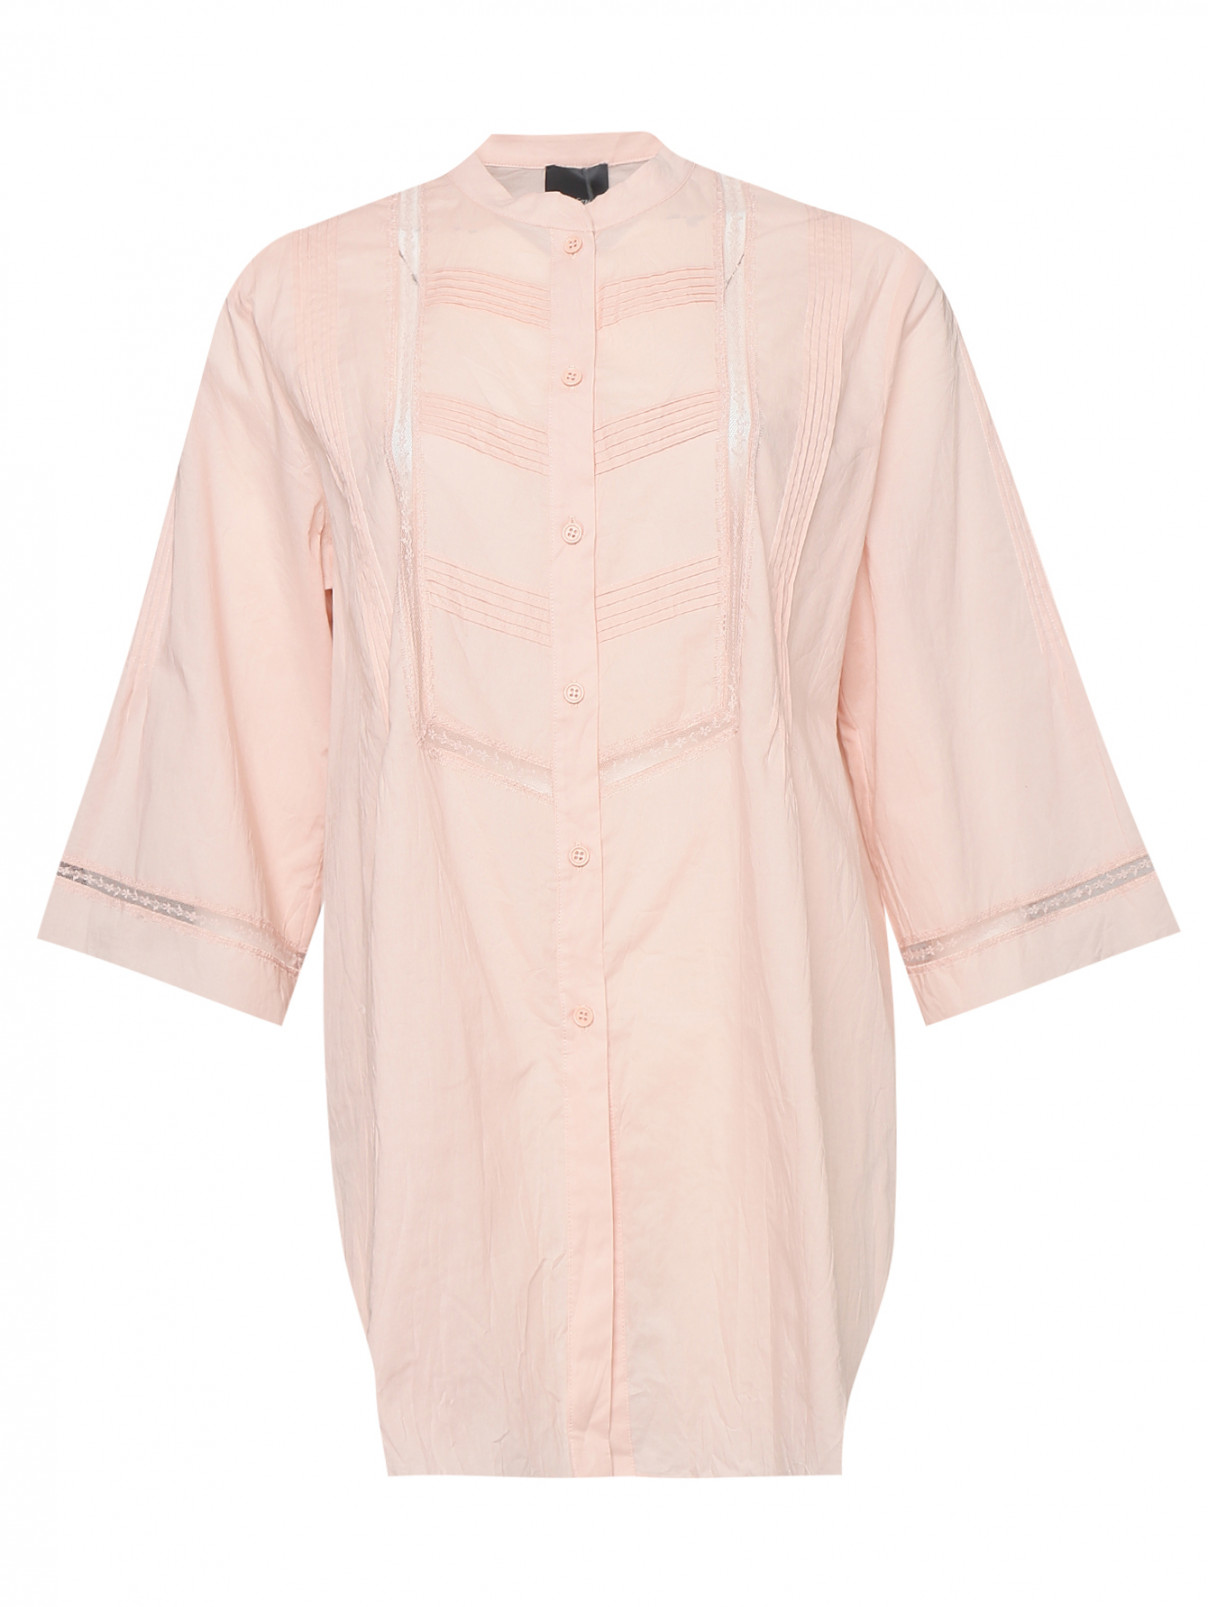 Рубашка из хлопка с вышивкой Persona by Marina Rinaldi  –  Общий вид  – Цвет:  Розовый